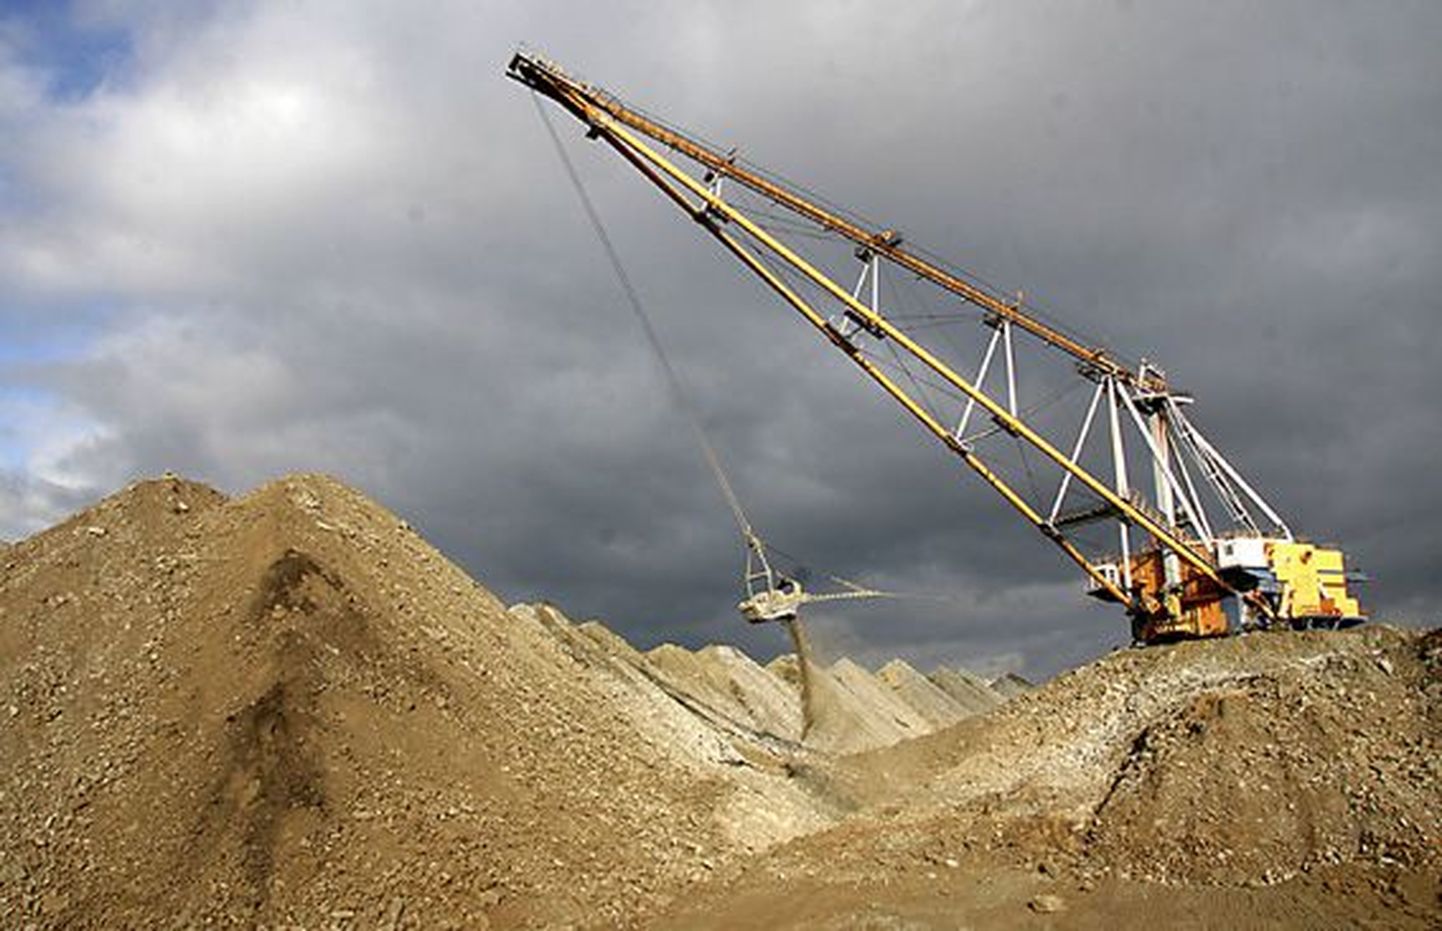 Uue kaevanduse piirkonnas küsitletud elanikud loodavad, et praegu karjäärist kostev ekskavaatorite müra allmaakaevandamise puhul kaob.